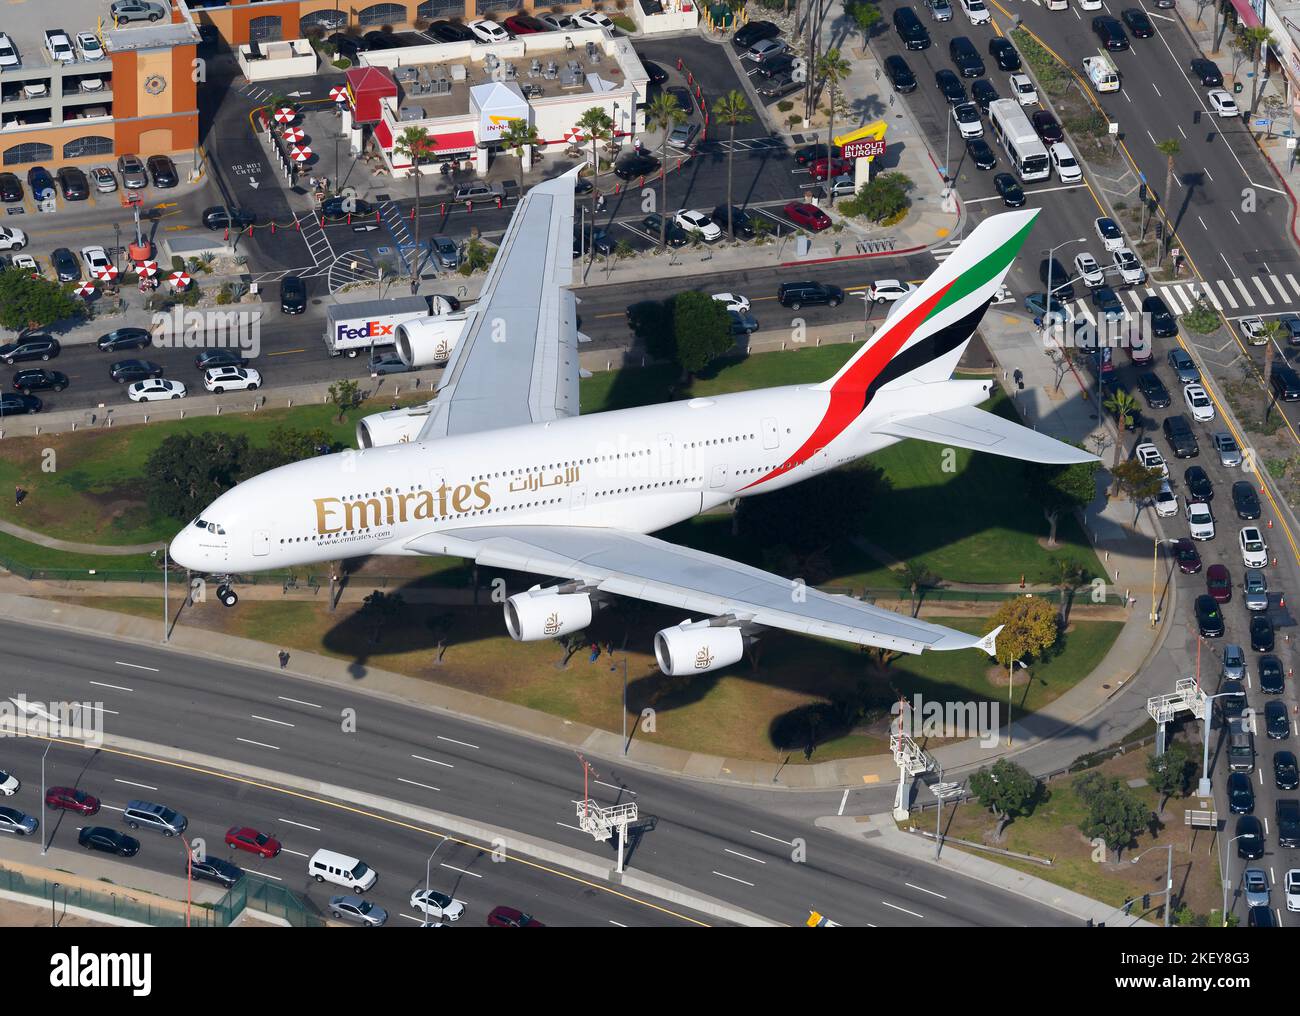 Emirates Airline Airbus A380 atterrissage d'un avion. Vue aérienne des avions Emirates Airlines A380-800. Plan A6-UE. Banque D'Images